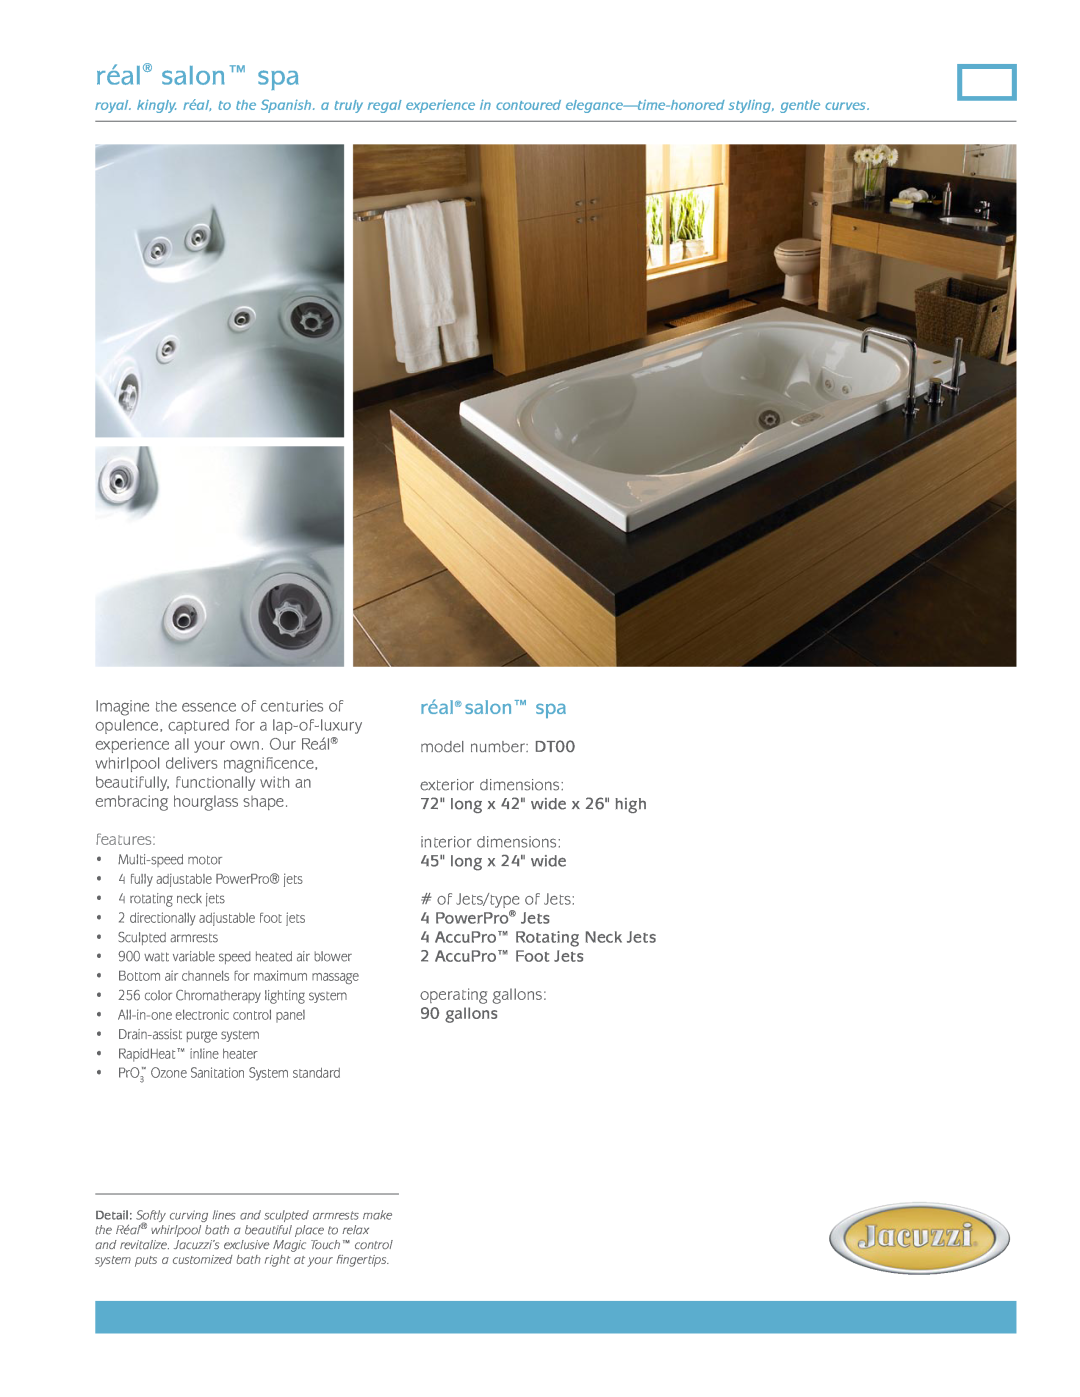 Jacuzzi DT00 dimensions réal salon spa, features 